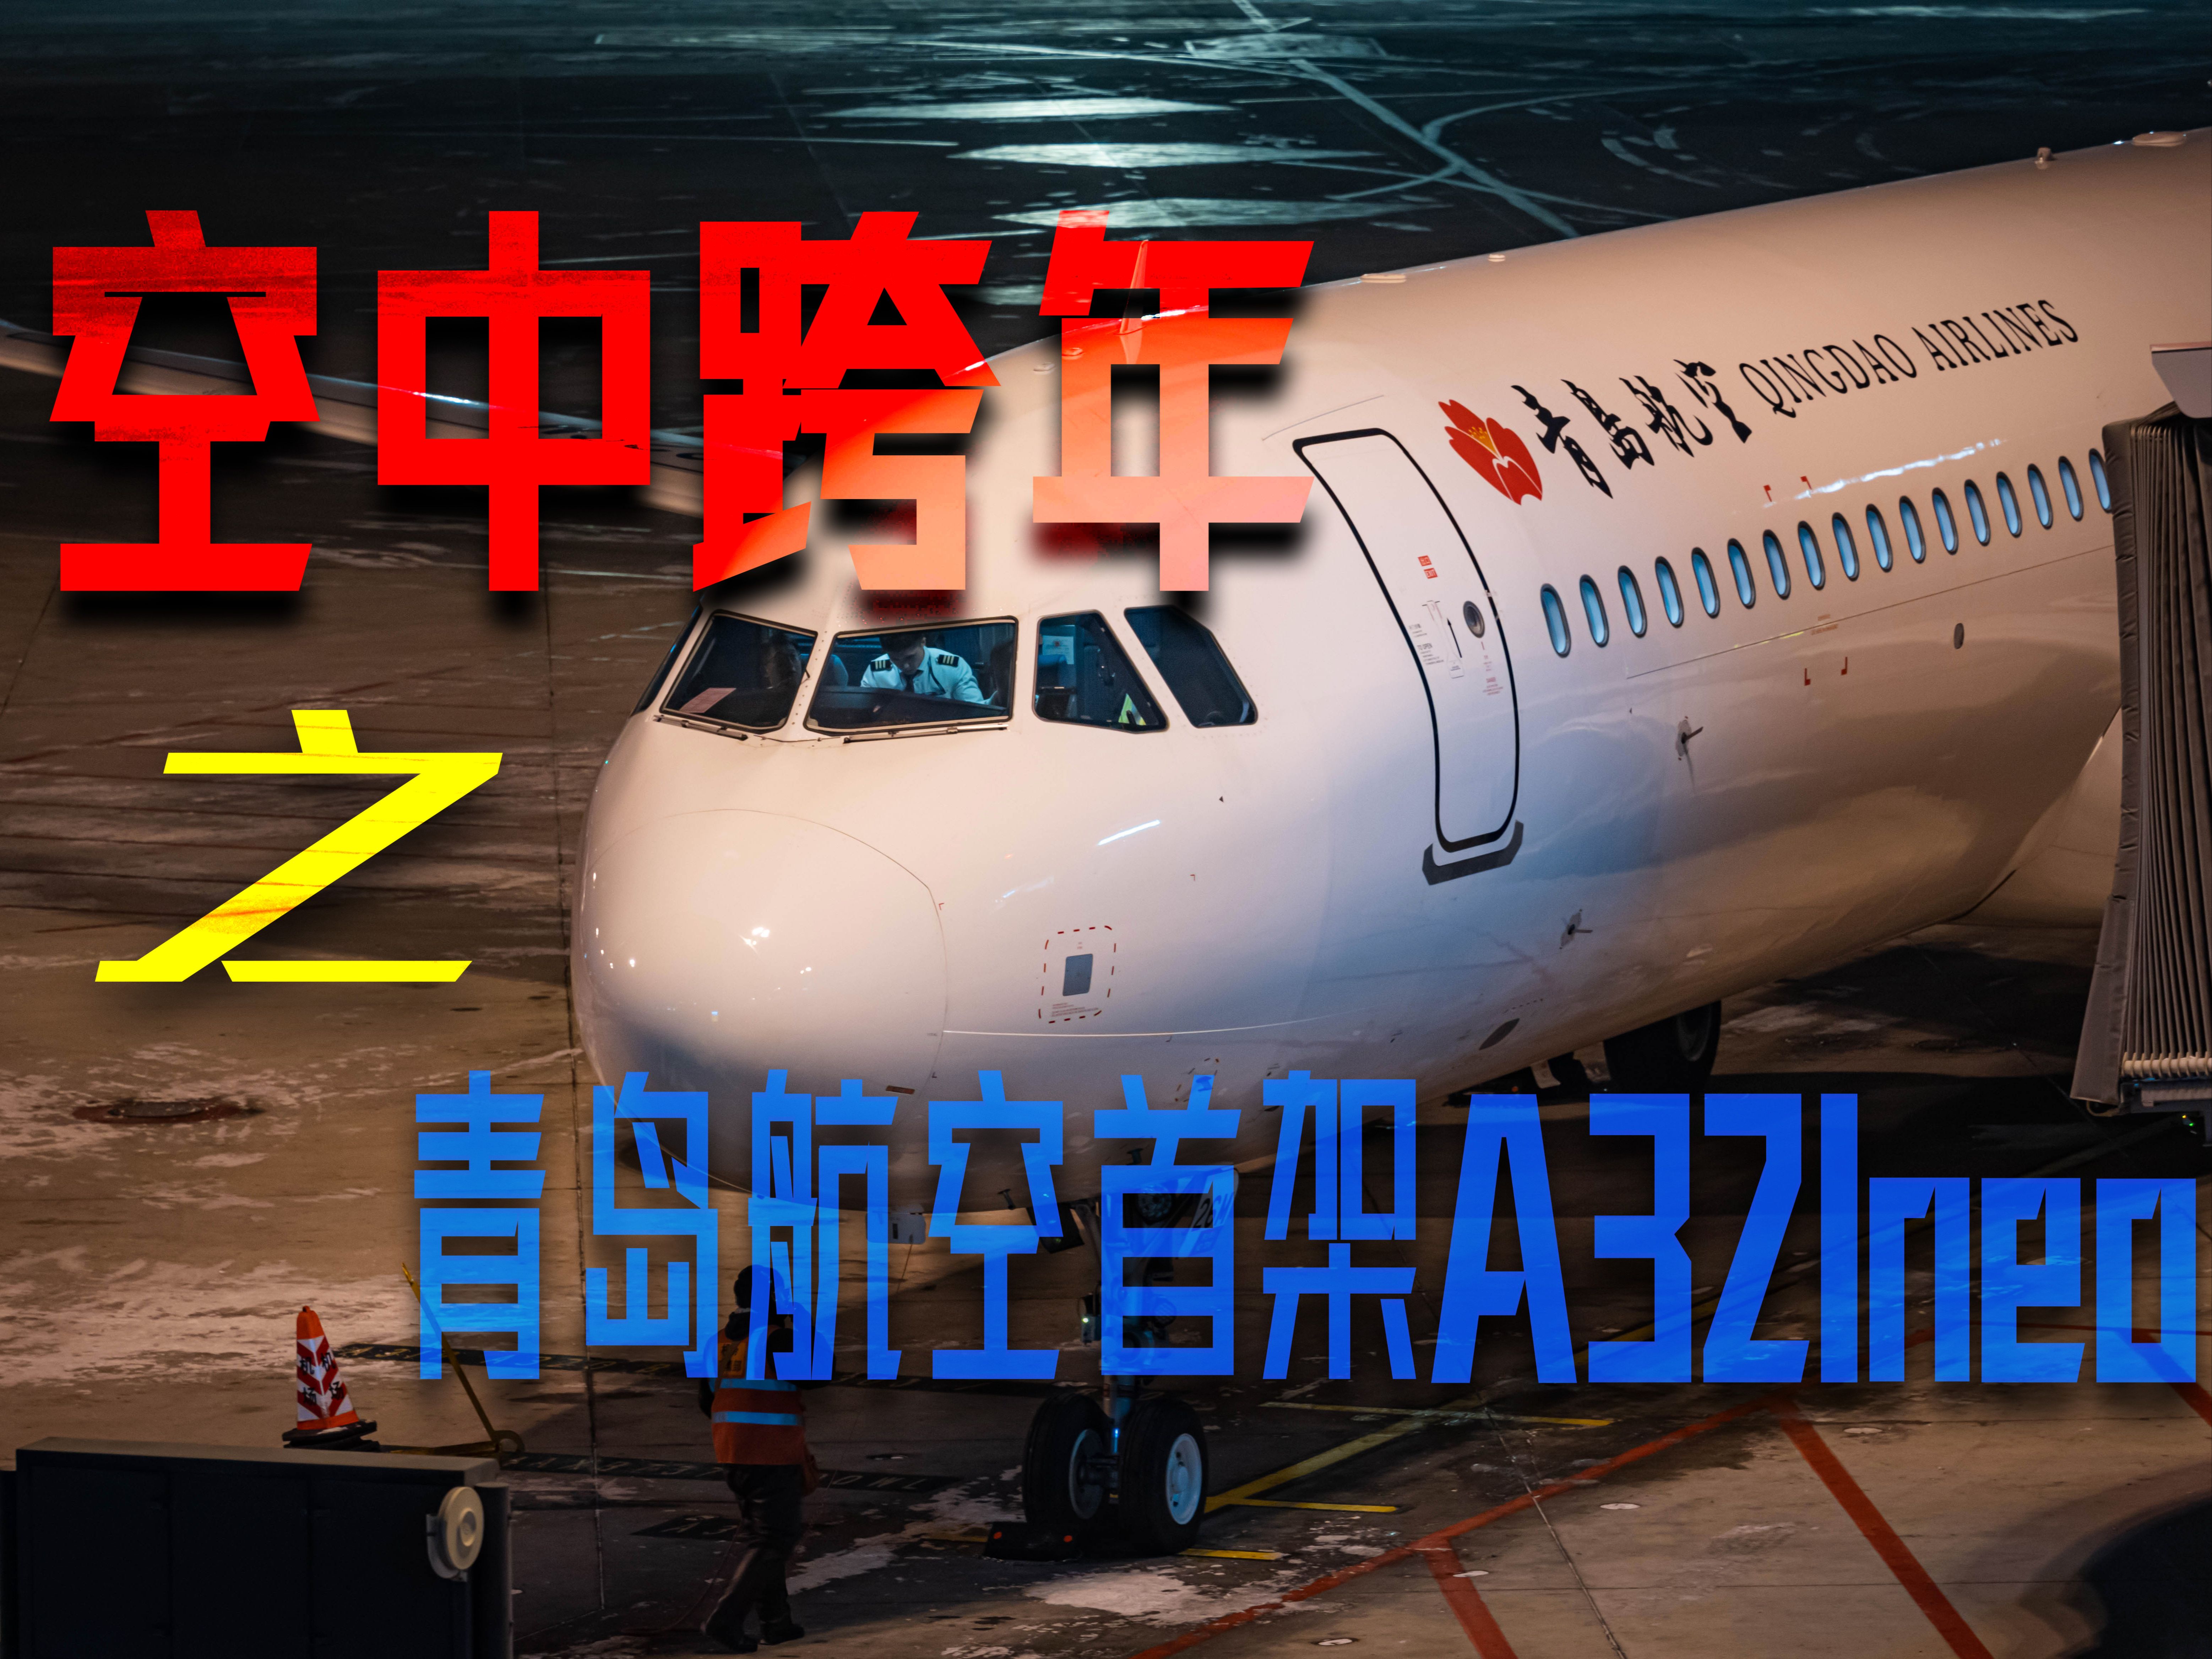 【航空】在万米高空的青岛航空首架A321neo上跨年是什么感觉-QW9882哈尔滨太平→青岛胶东飞行体验-959 